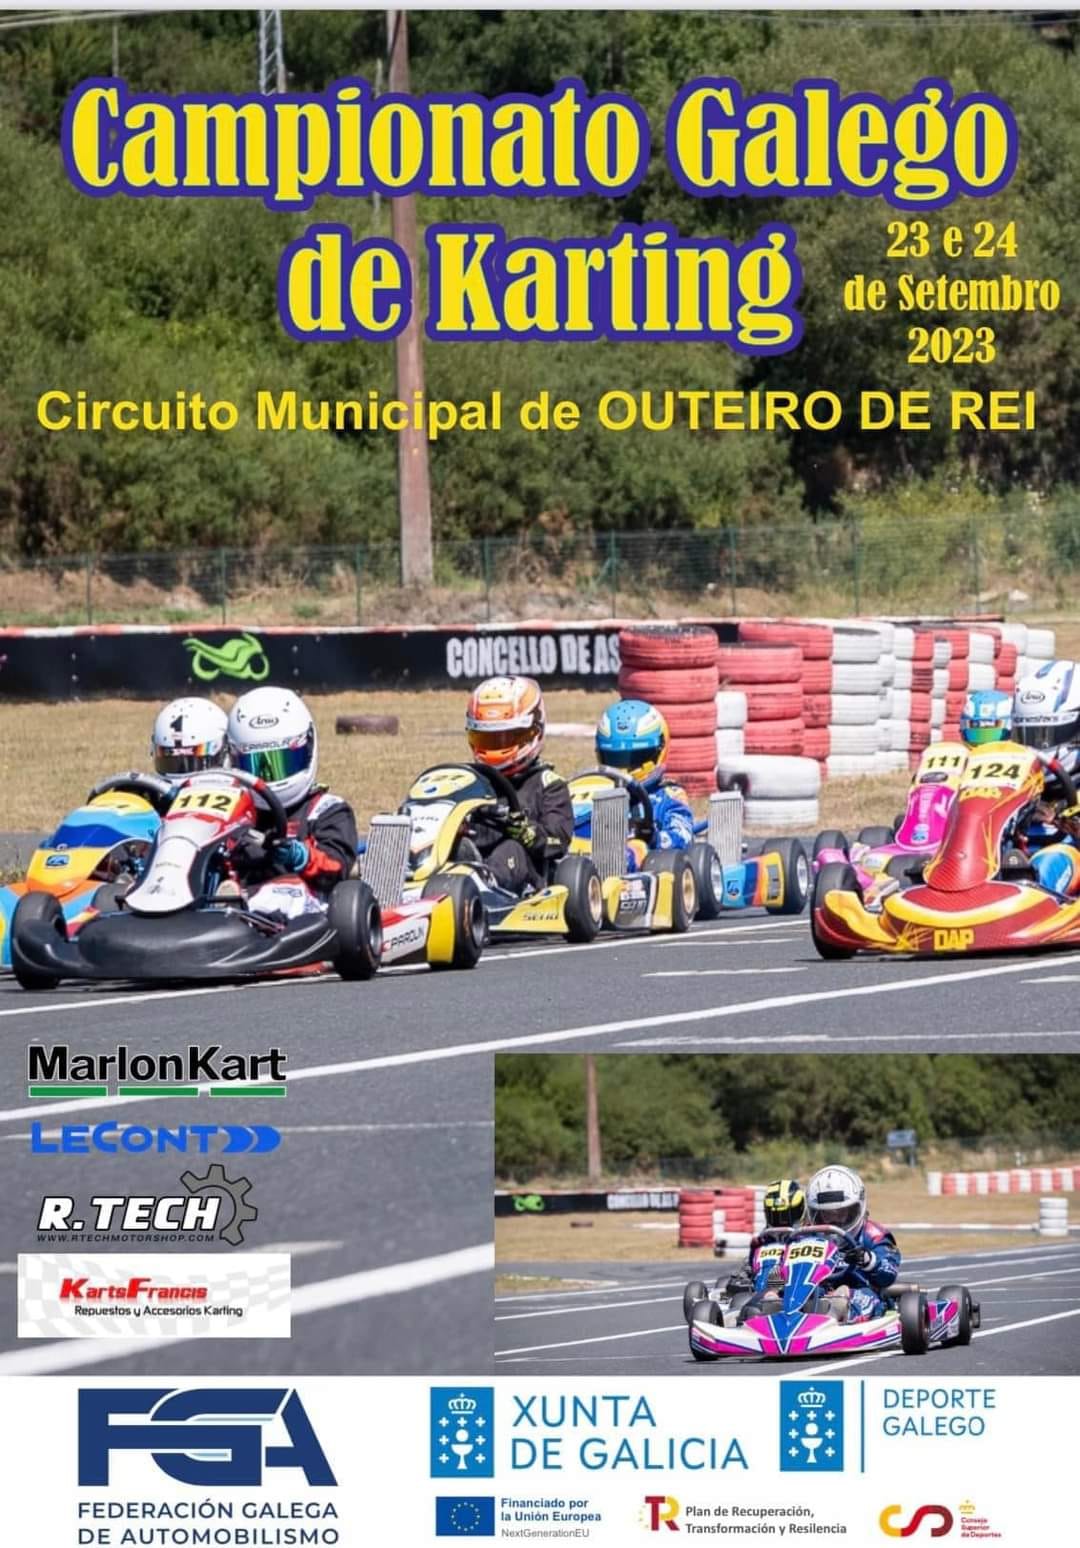 Campionato Galego de Karting Outeiro de Rei 